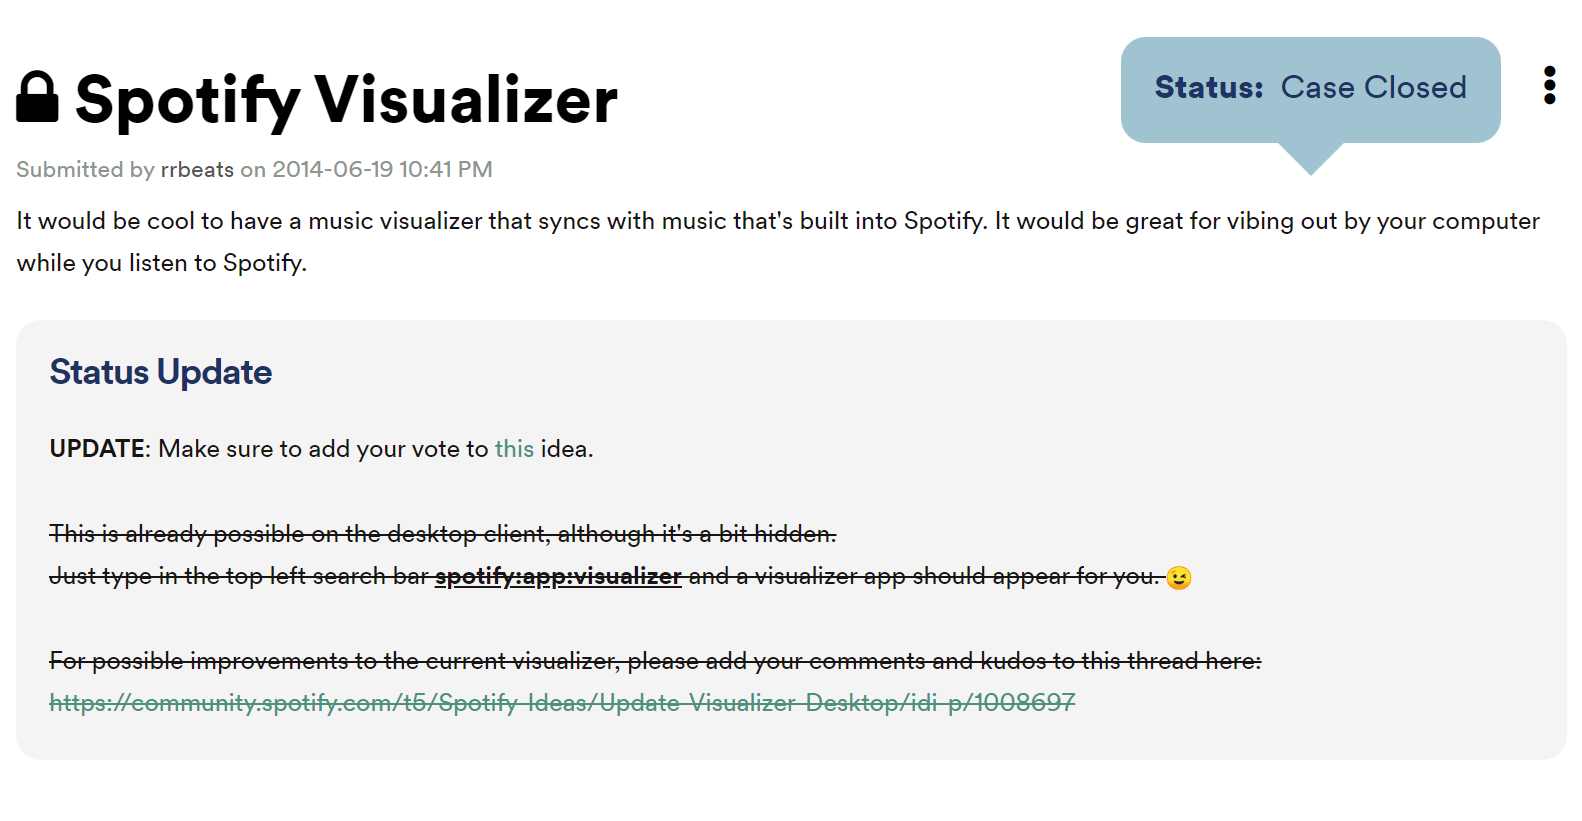 Spotify Визуализатор закрыт